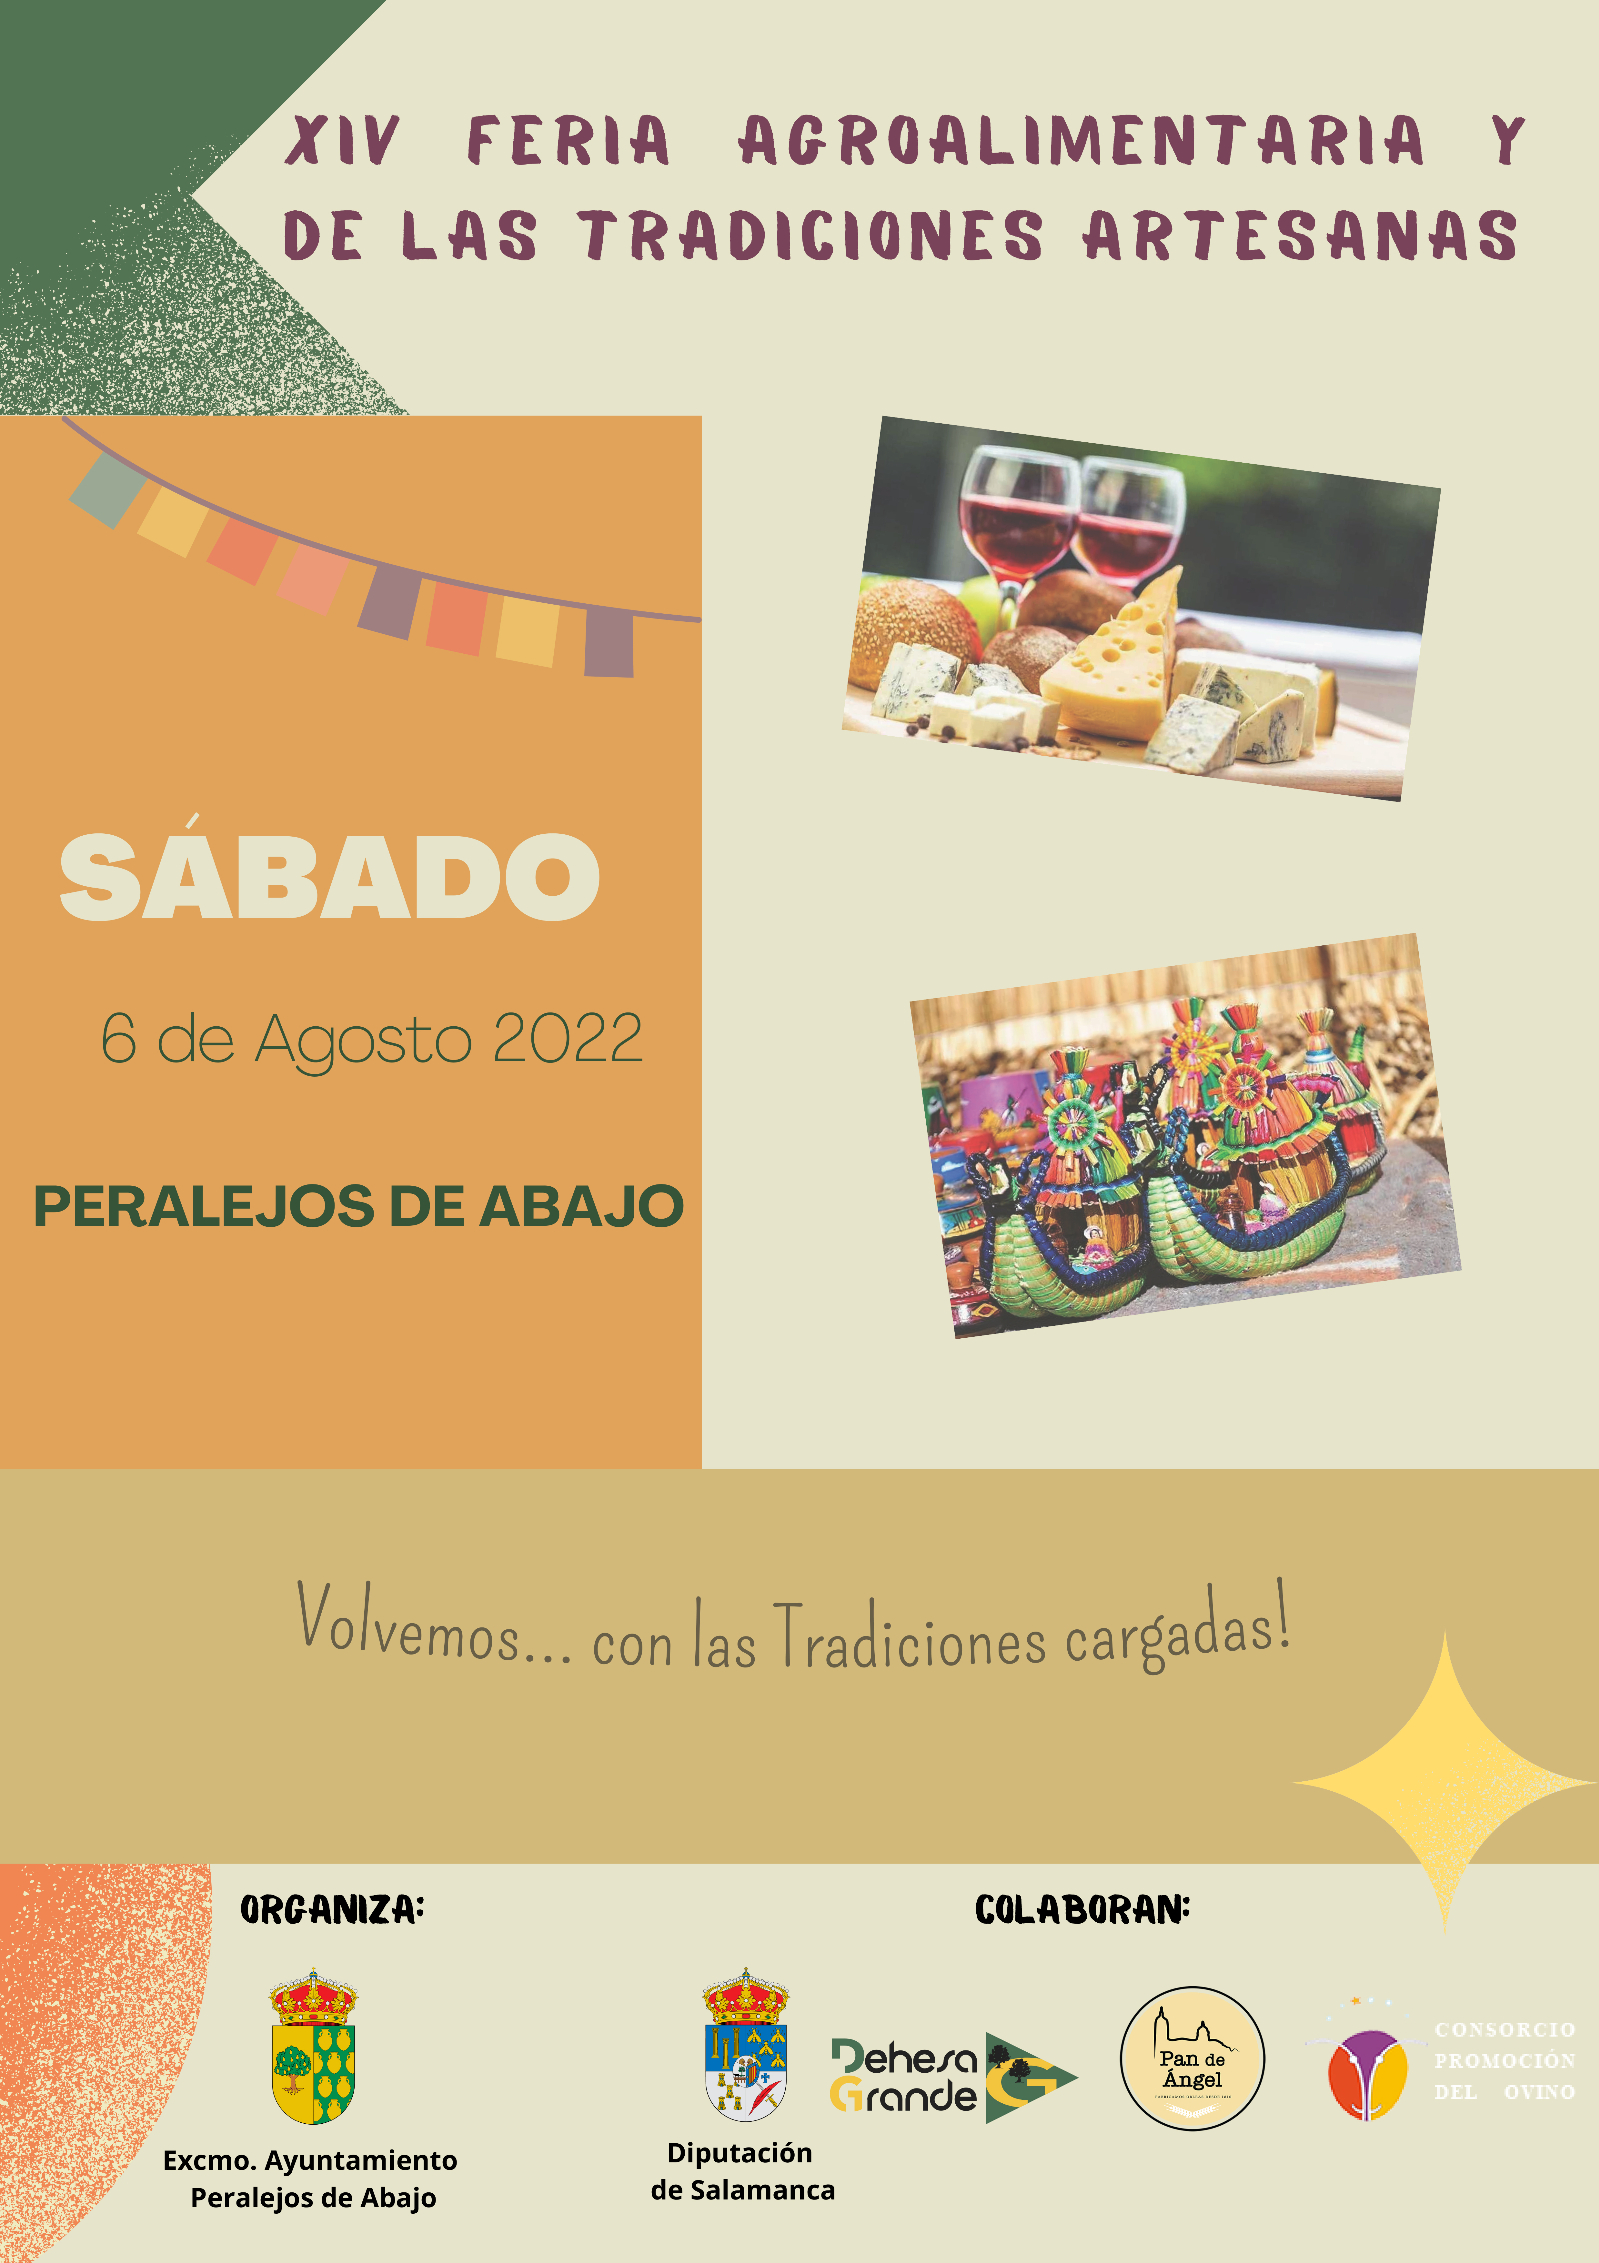 Foto 2 - Azúcar Moreno, El Suso y la Feria Agroalimentaria de las Tradiciones, protagonistas en las fiestas de Peralejos de Abajo  